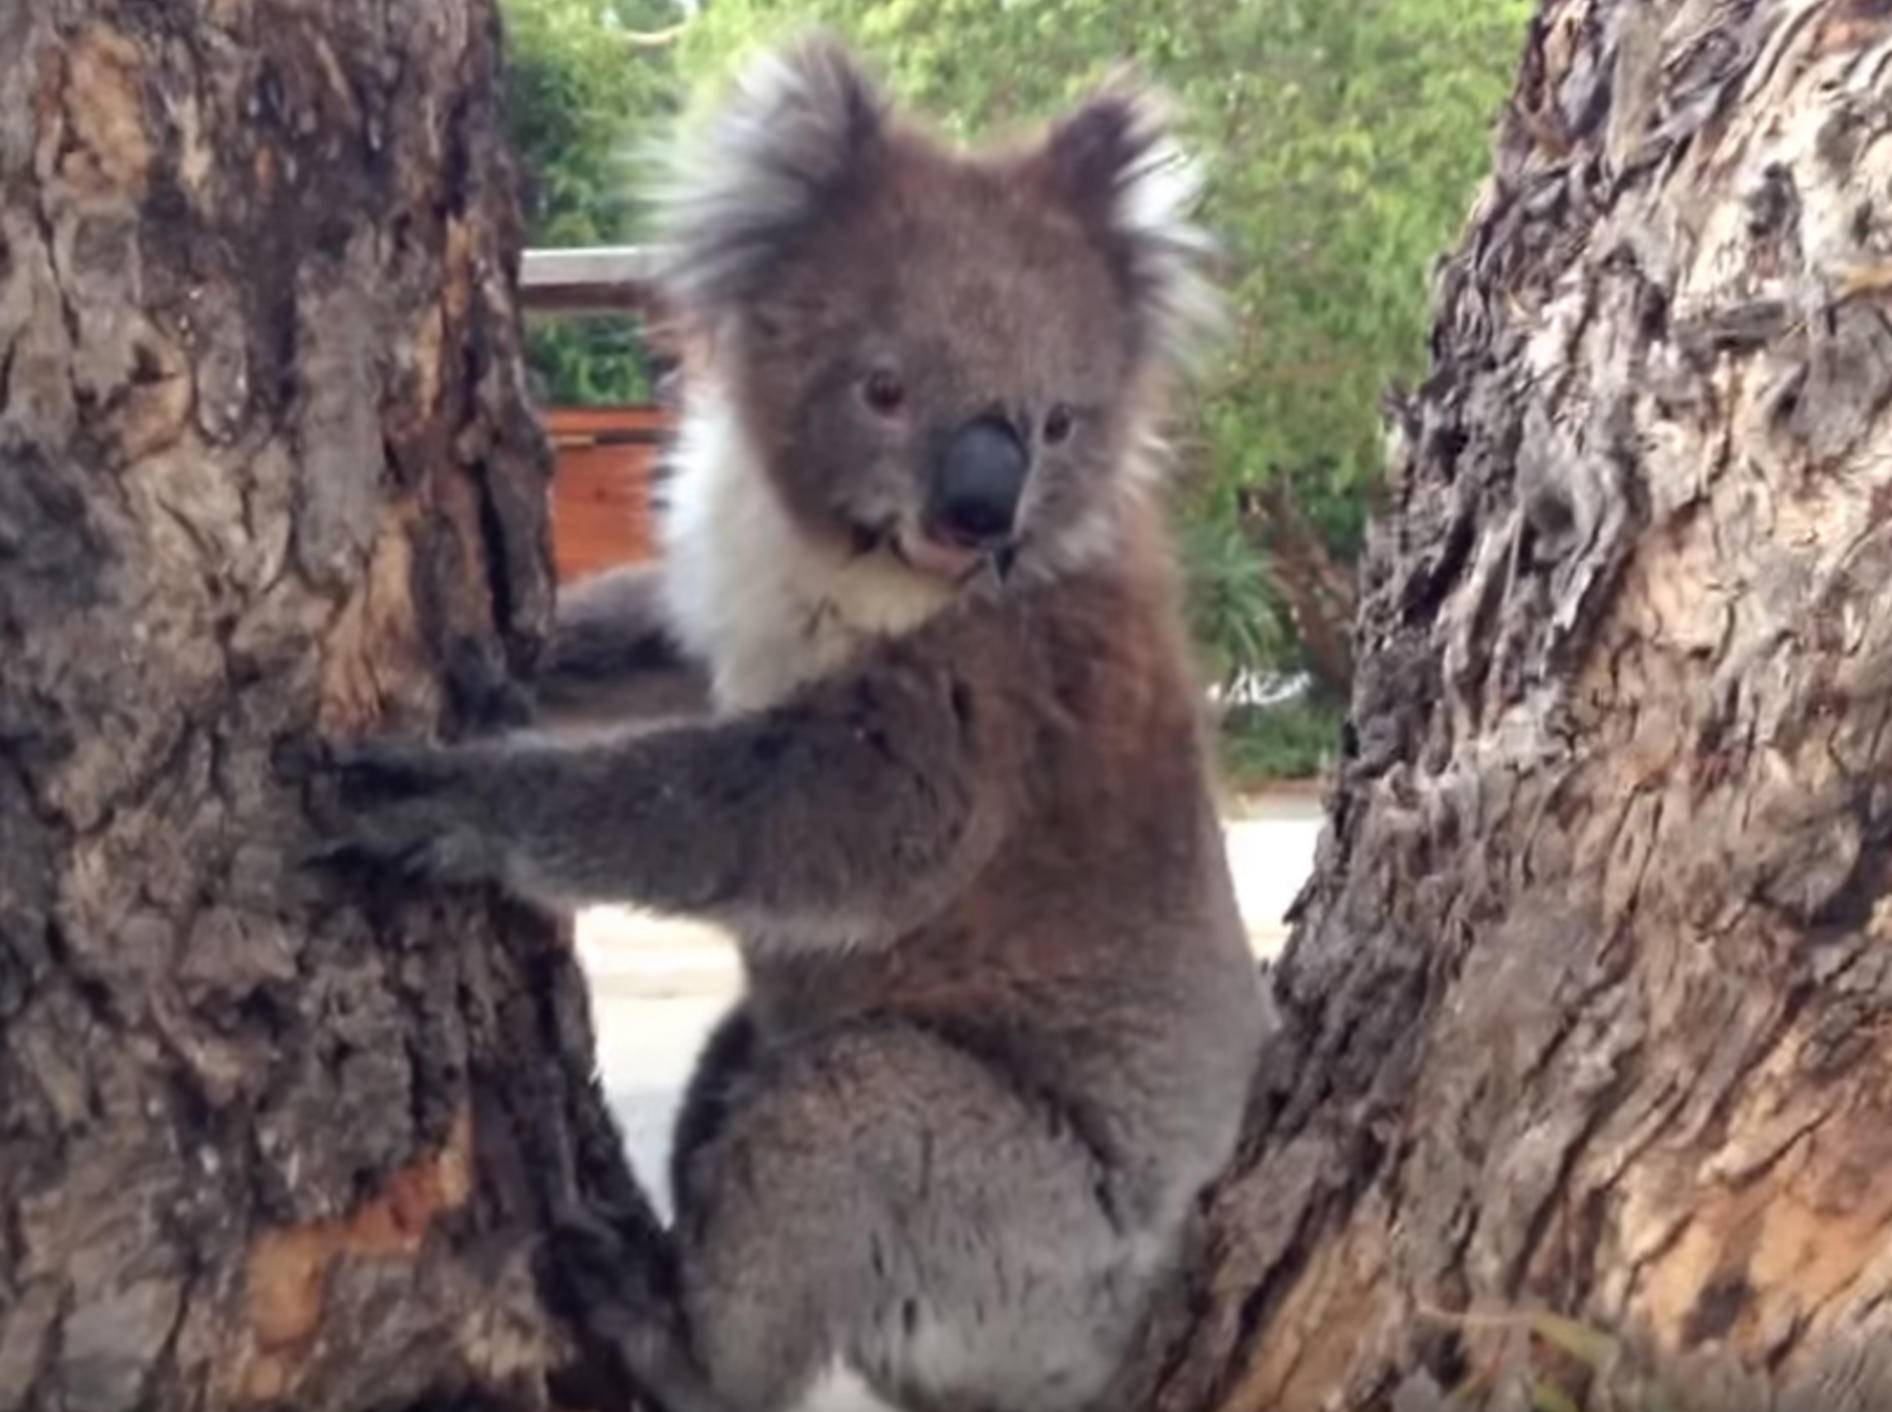 Süßer Koala will lieber kuscheln statt klettern - Bild: YouTube / Koalafication